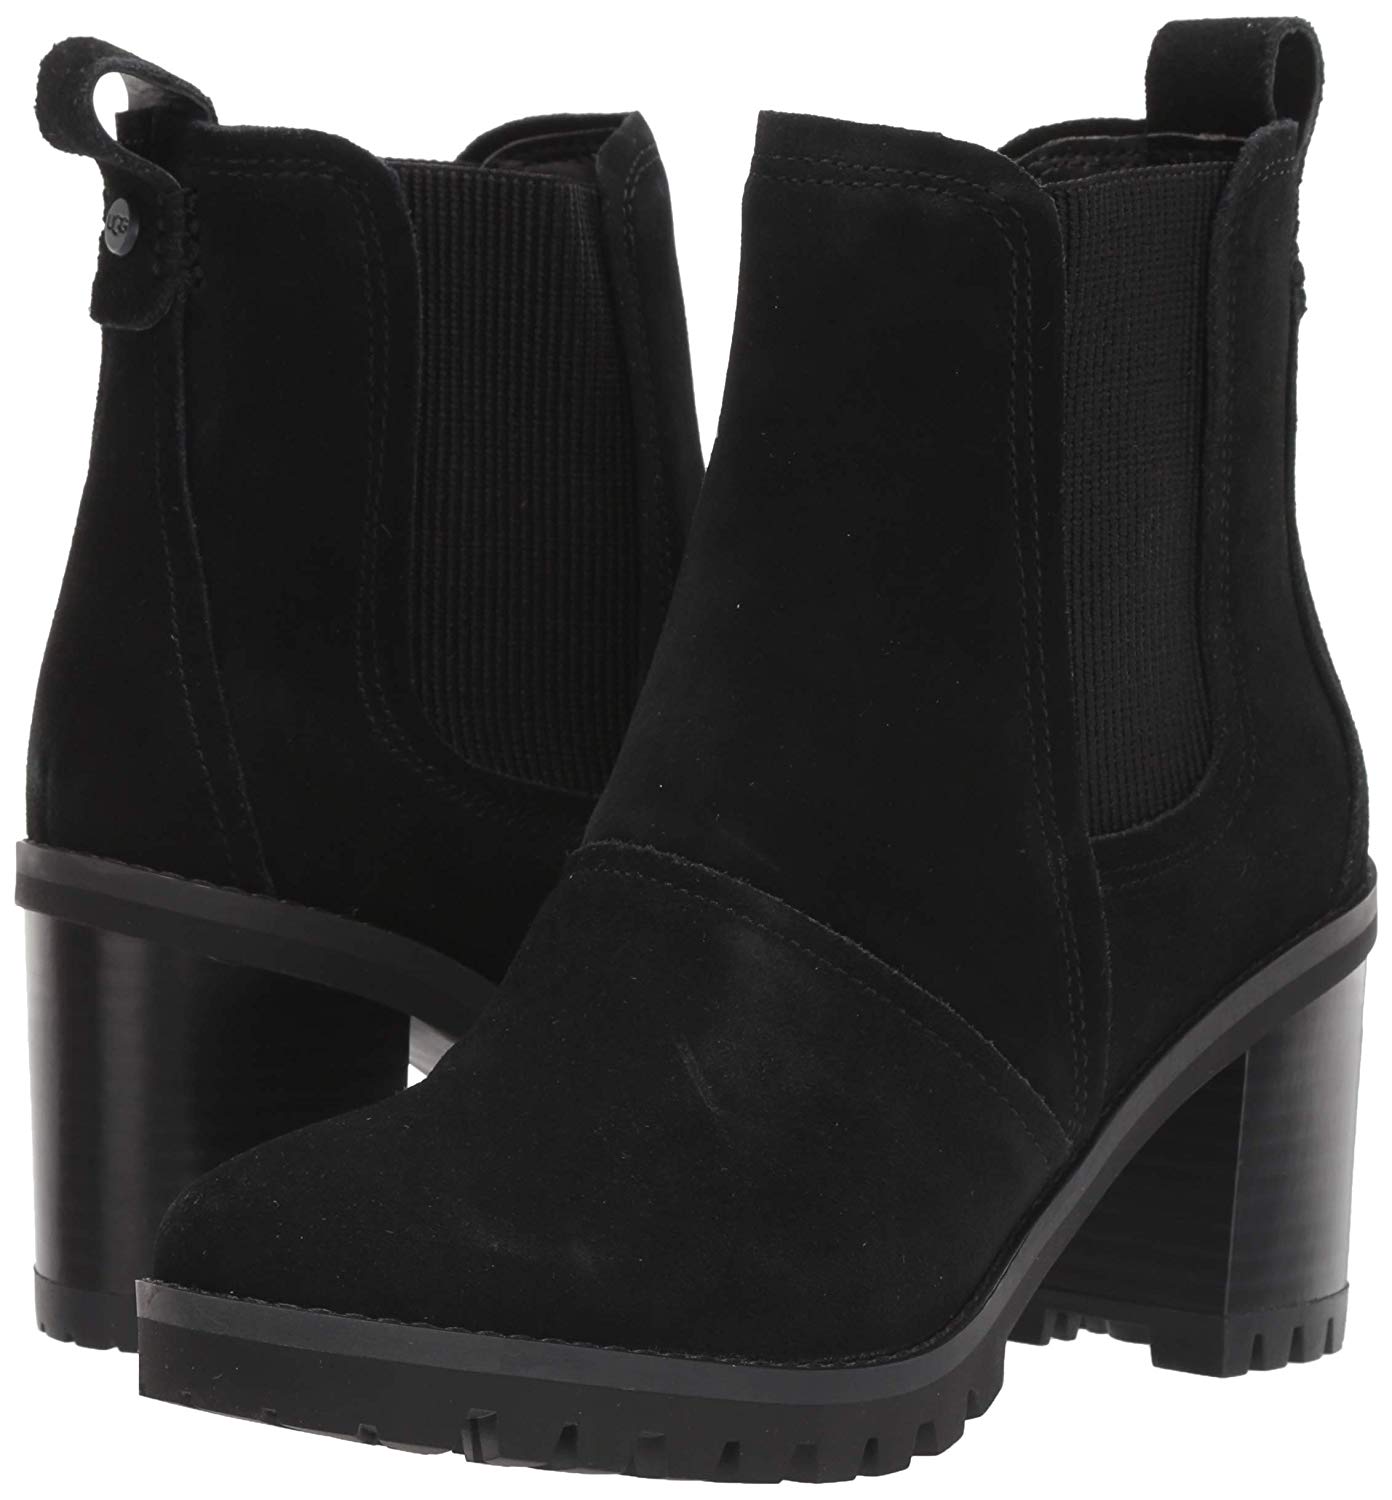 UGG Women's Hazel Chelsea Boot, Black, Size 7.0 Xl2T | eBay